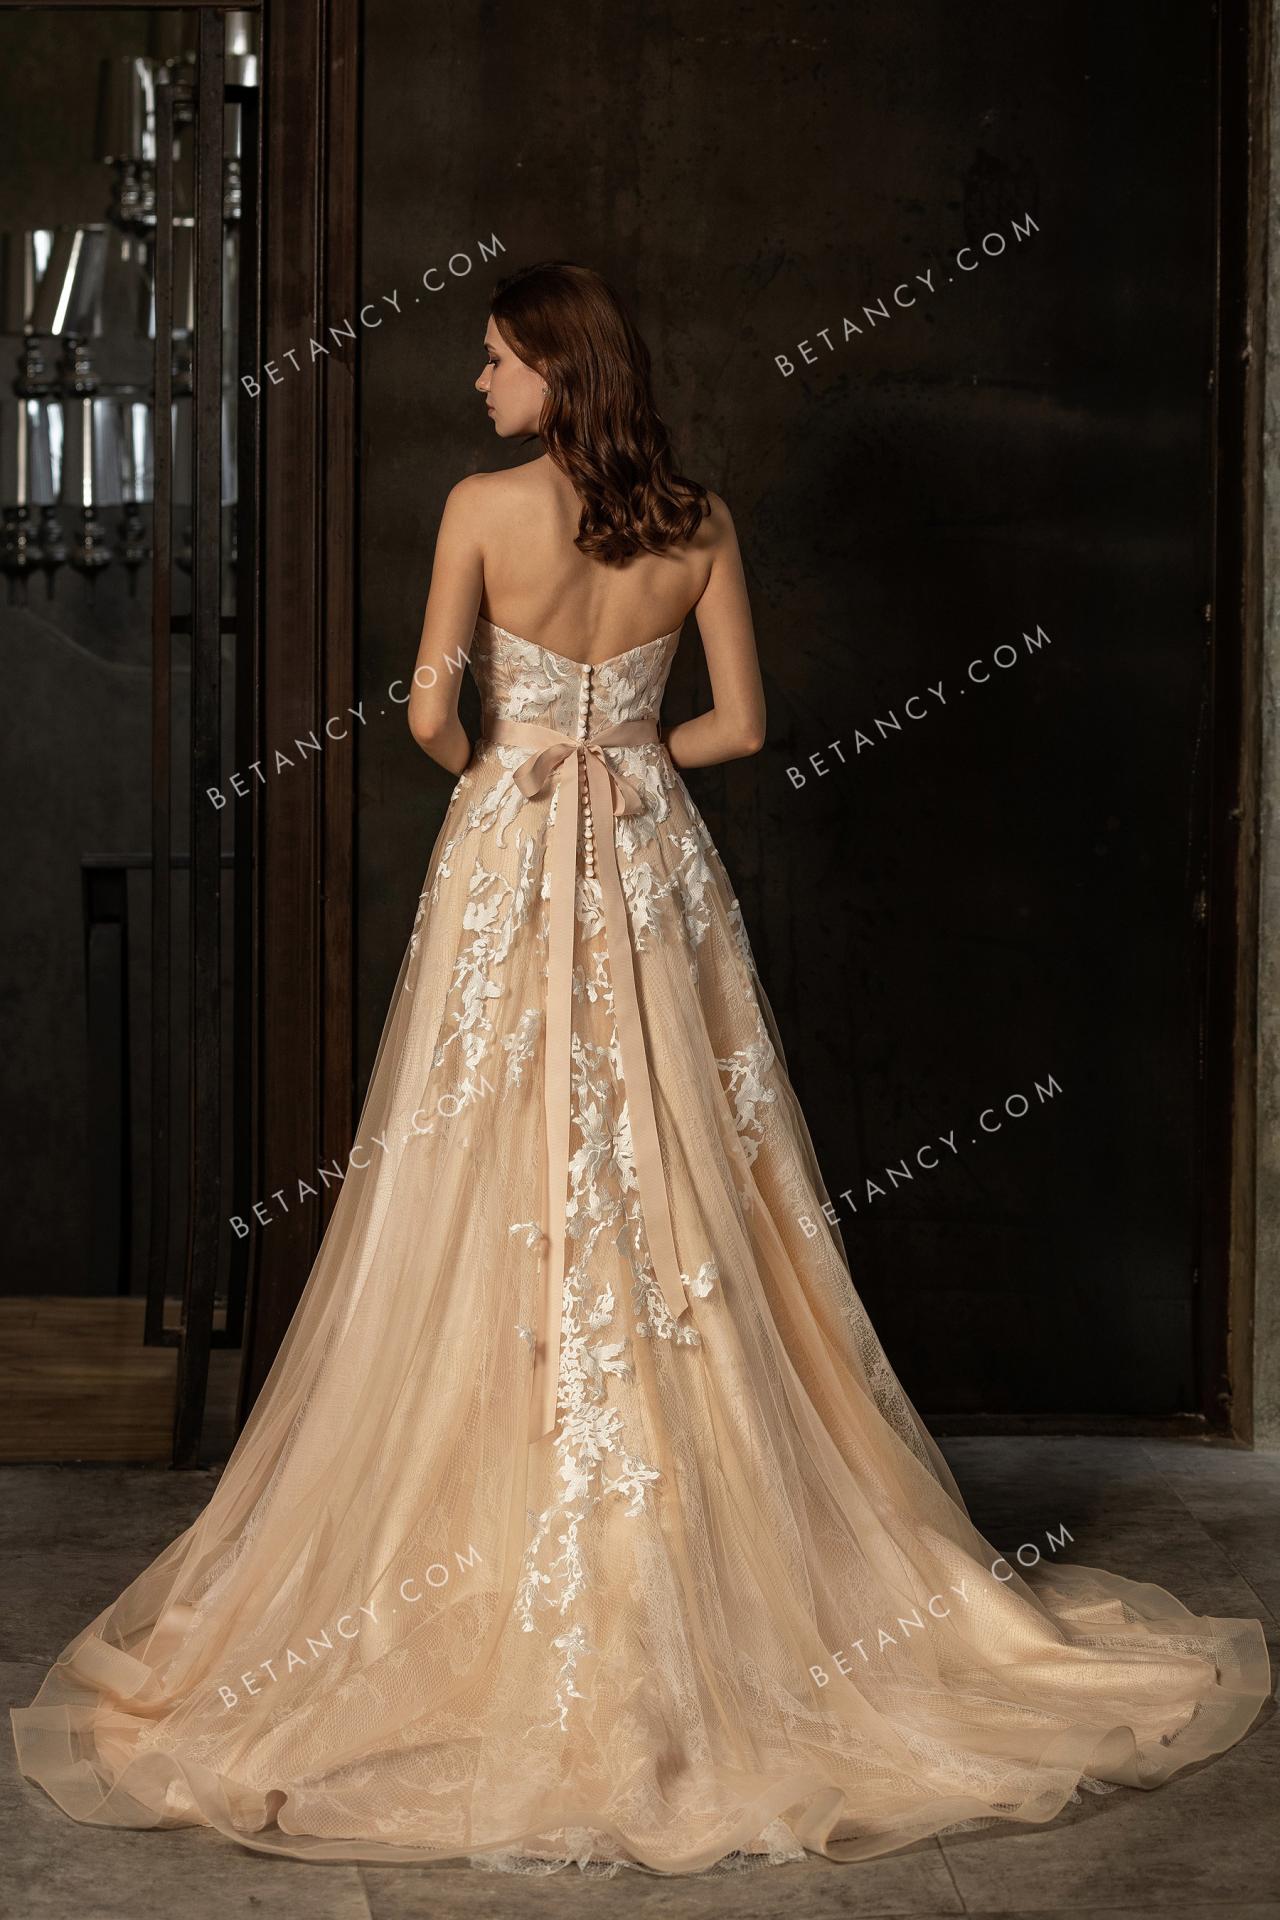 Asymmetric floral lace appliques on mesh wholesale wedding dress 3